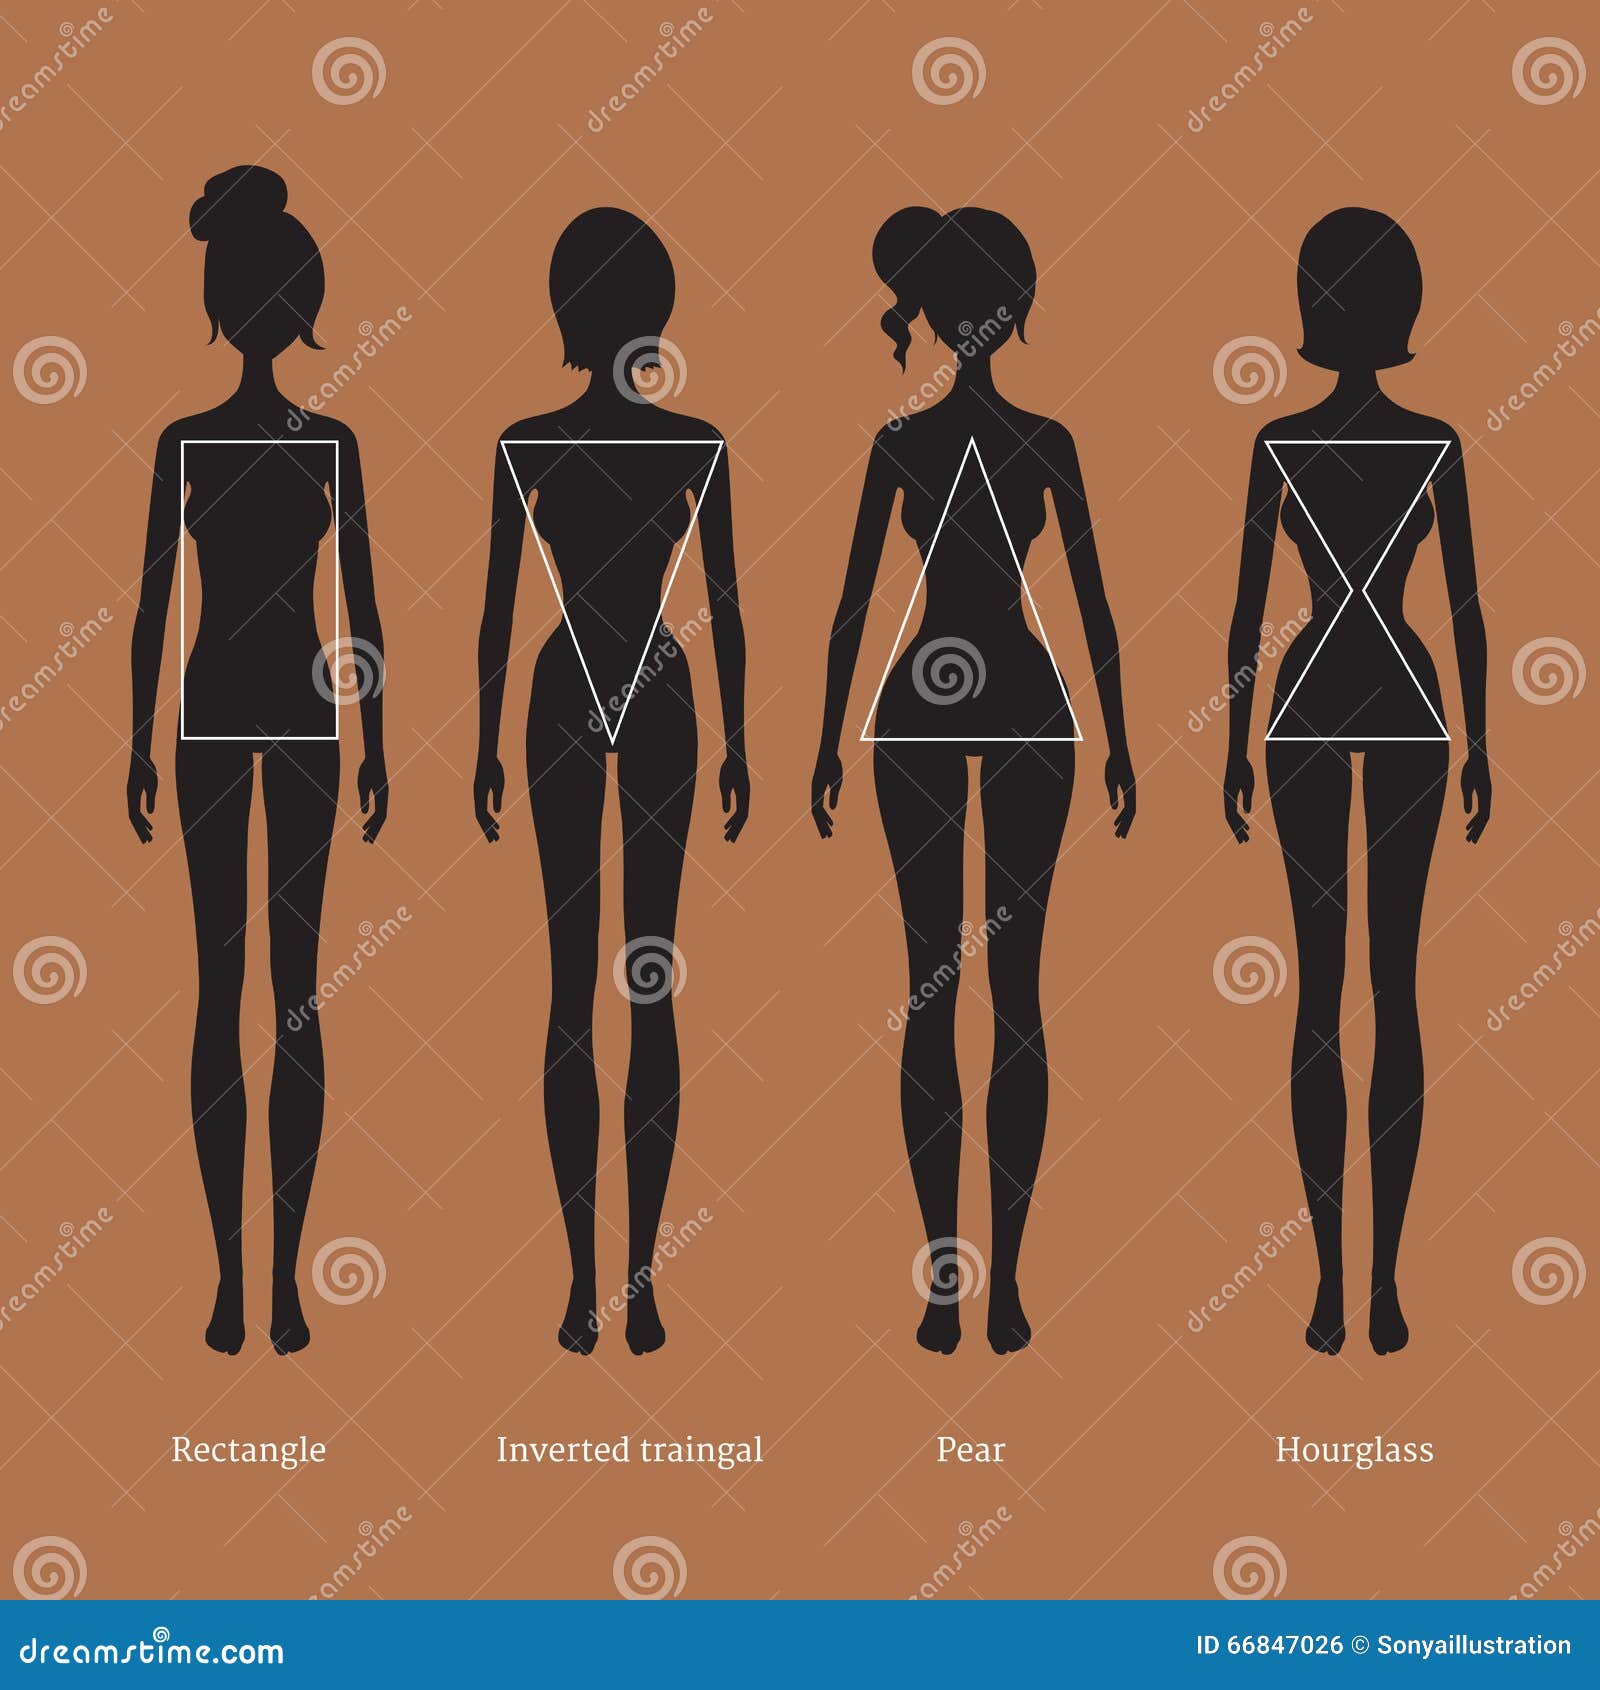 Female Body Types Stock Illustrations – 1,535 Female Body Types